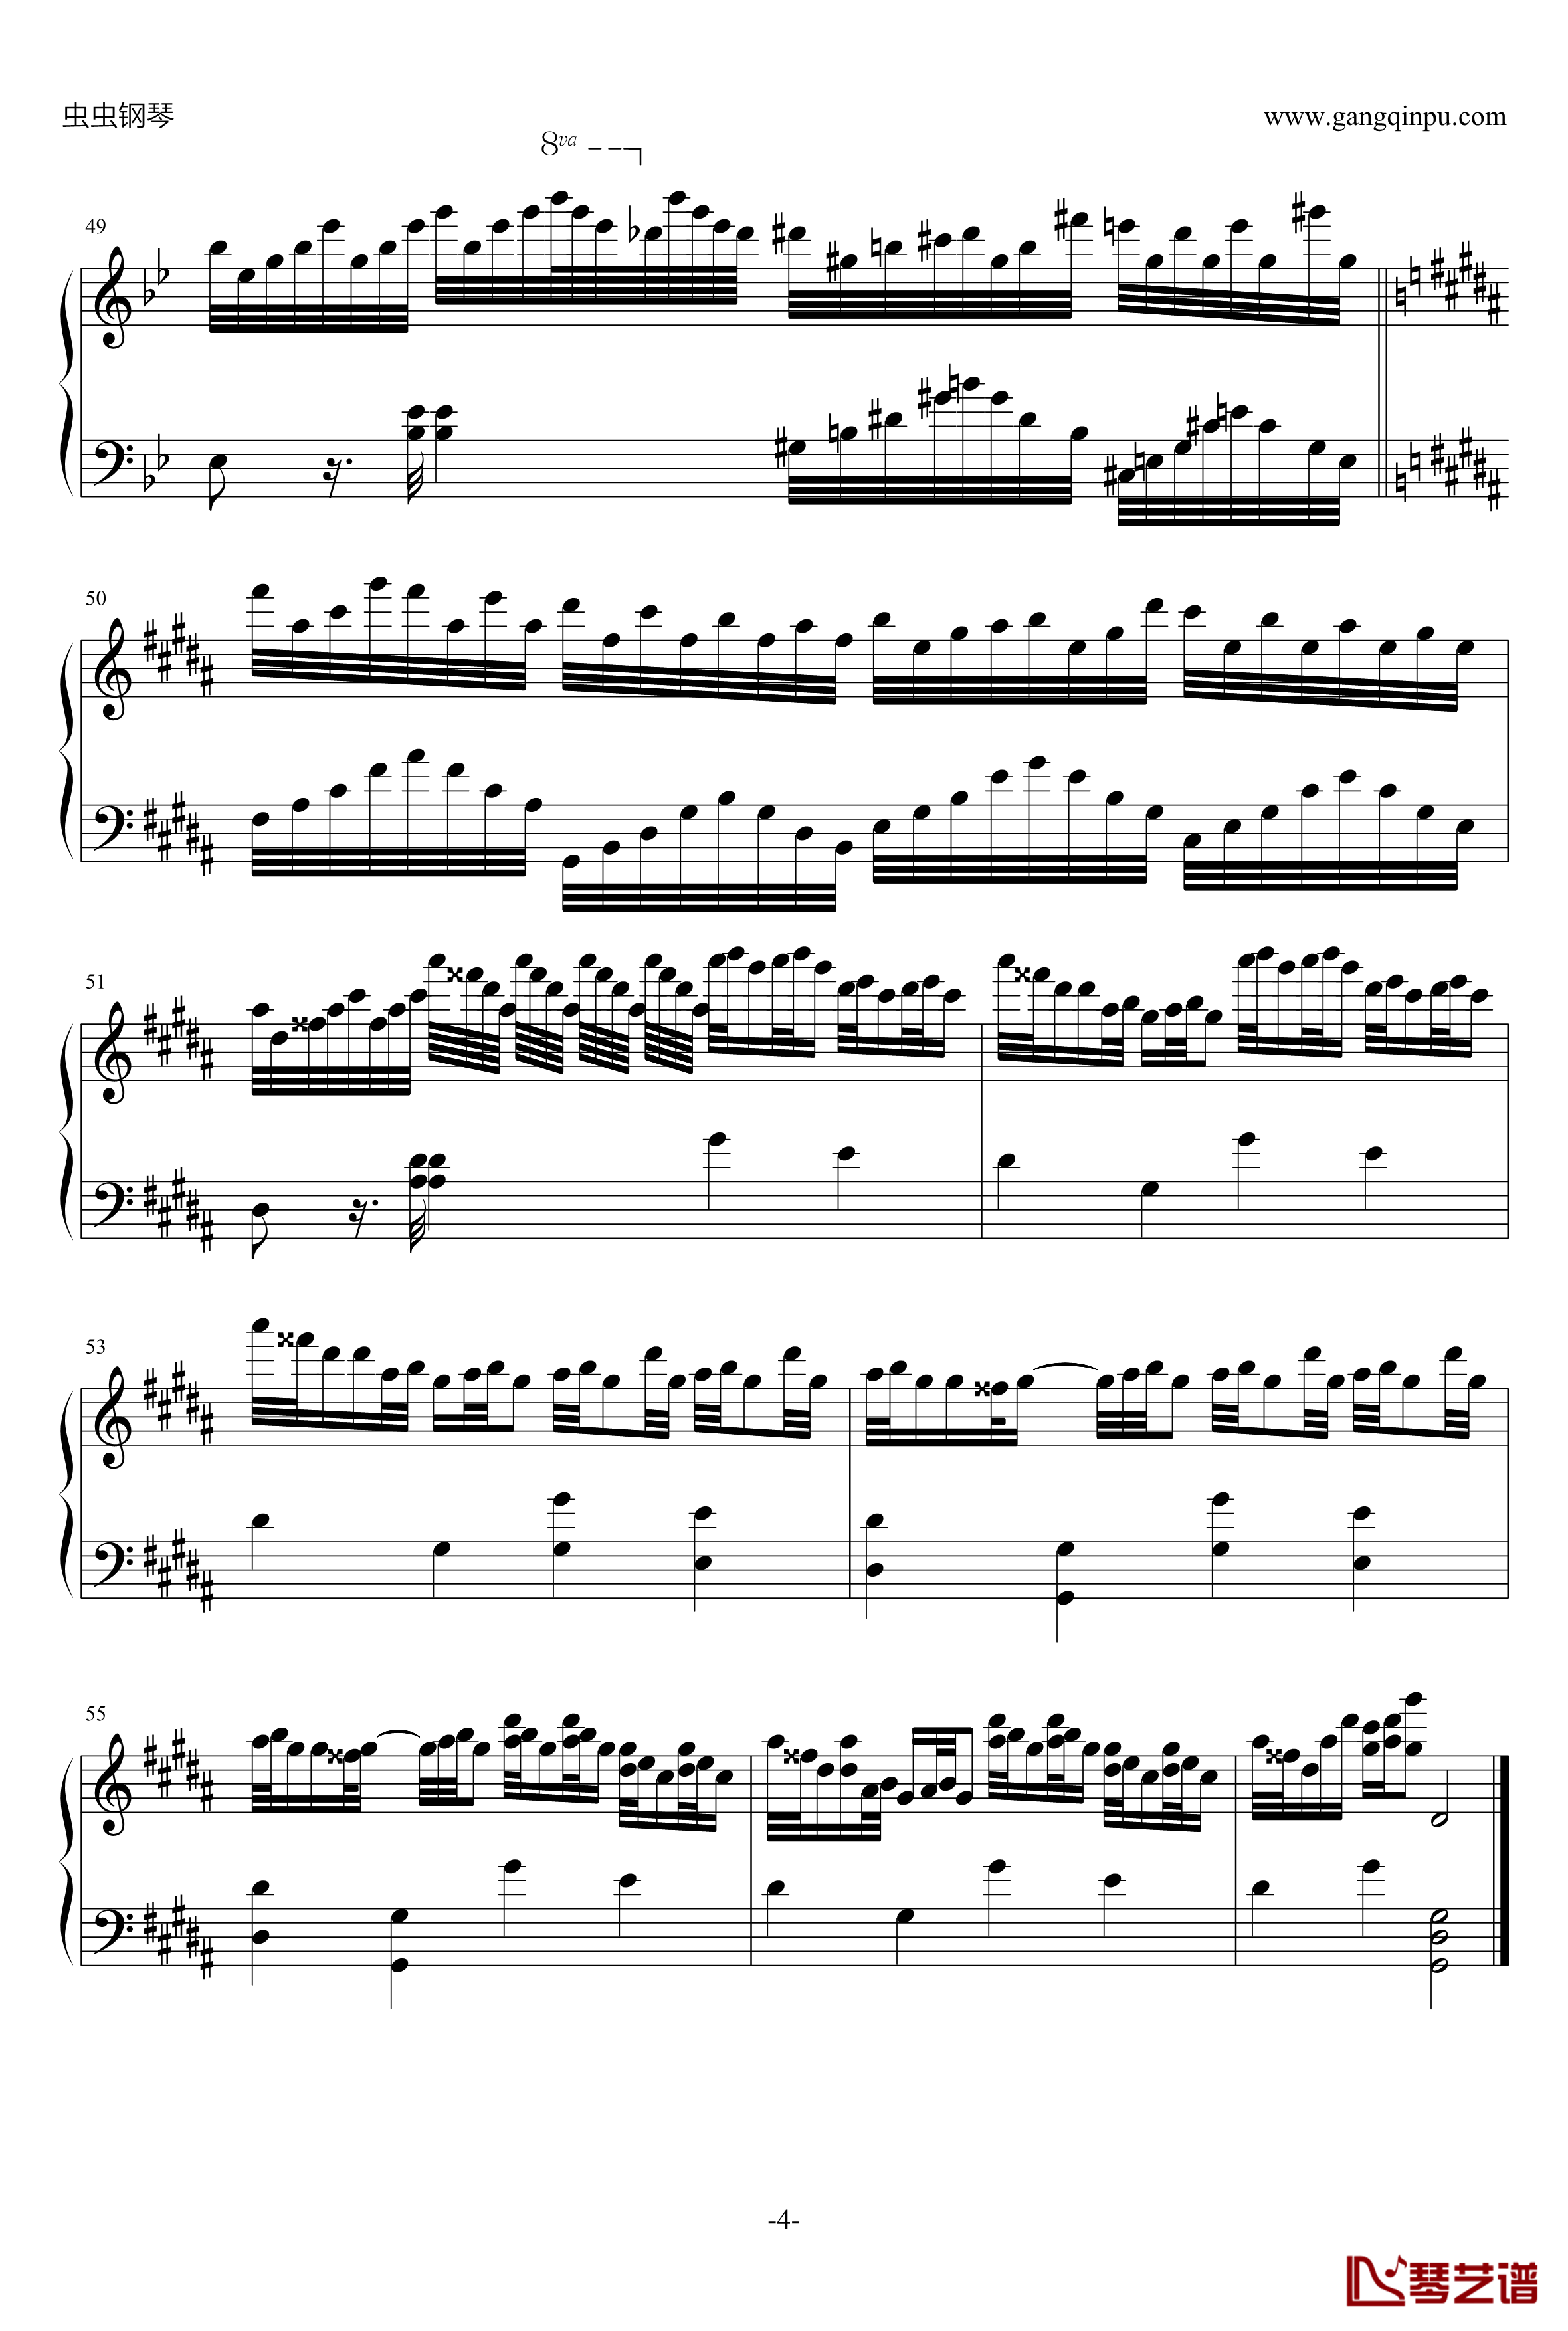 克罗地亚狂想曲钢琴谱-移调修改版-马克西姆-Maksim·Mrvica